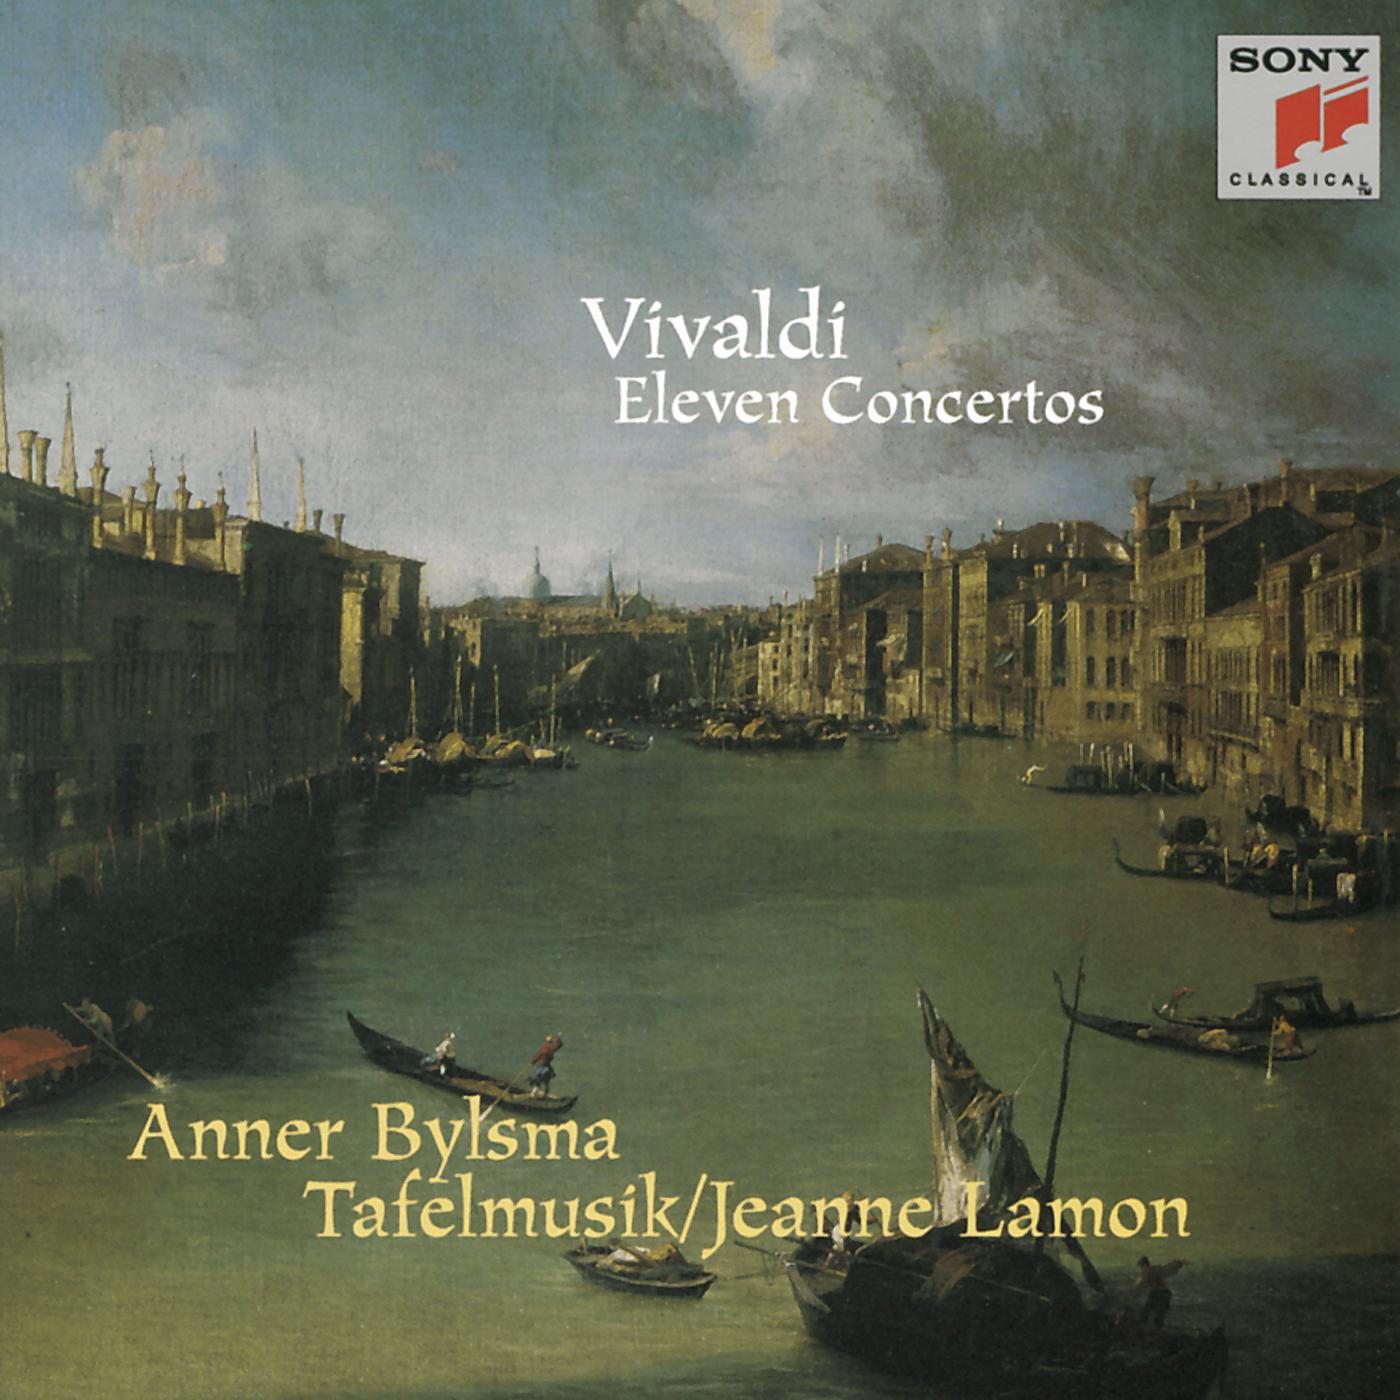 Concerto for Cello & Bassoon in E Minor, RV 409